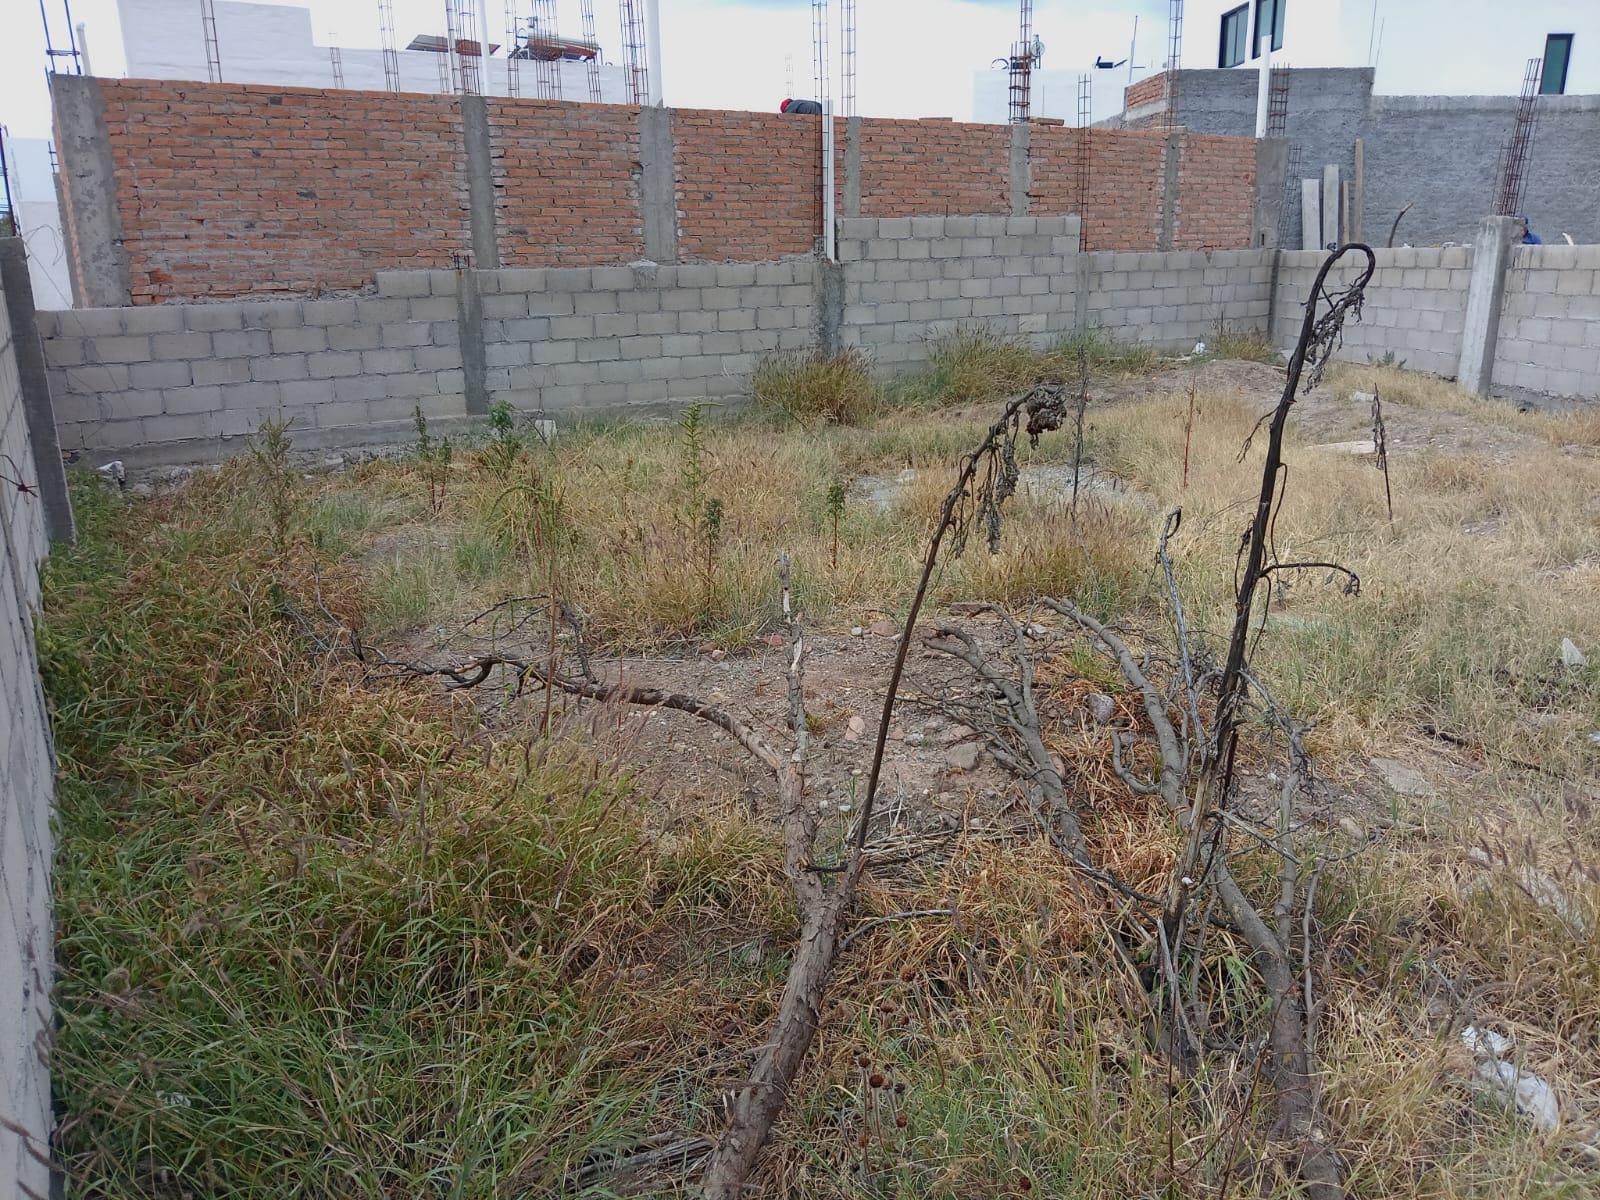 Terreno en Fraccionamiento Villas de La Cantera, Aguascalientes